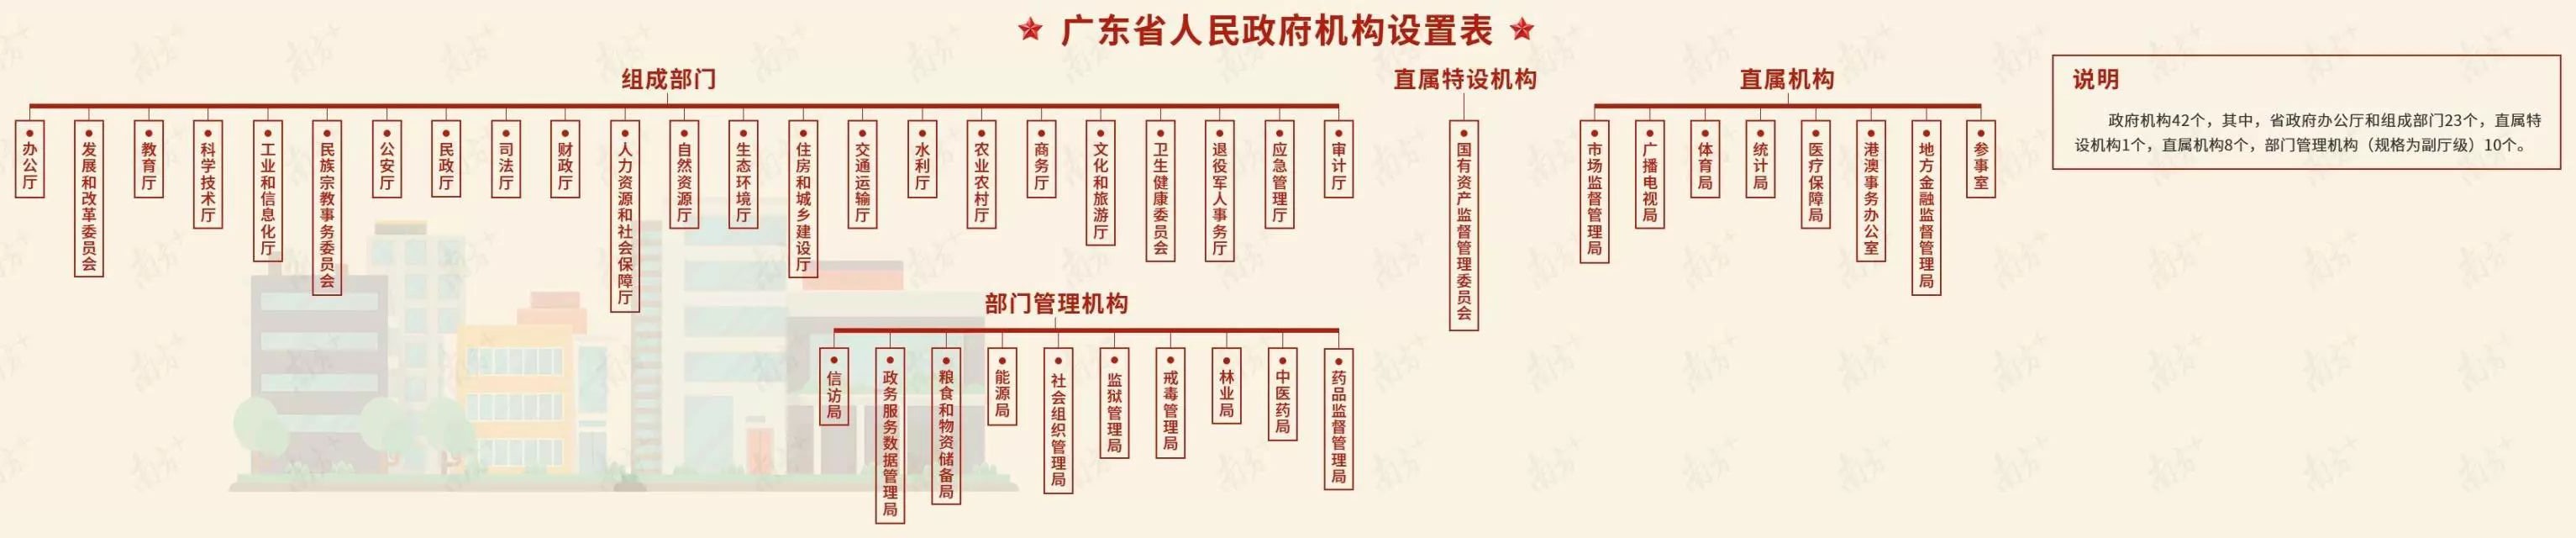 廣東省人民政府機構改革